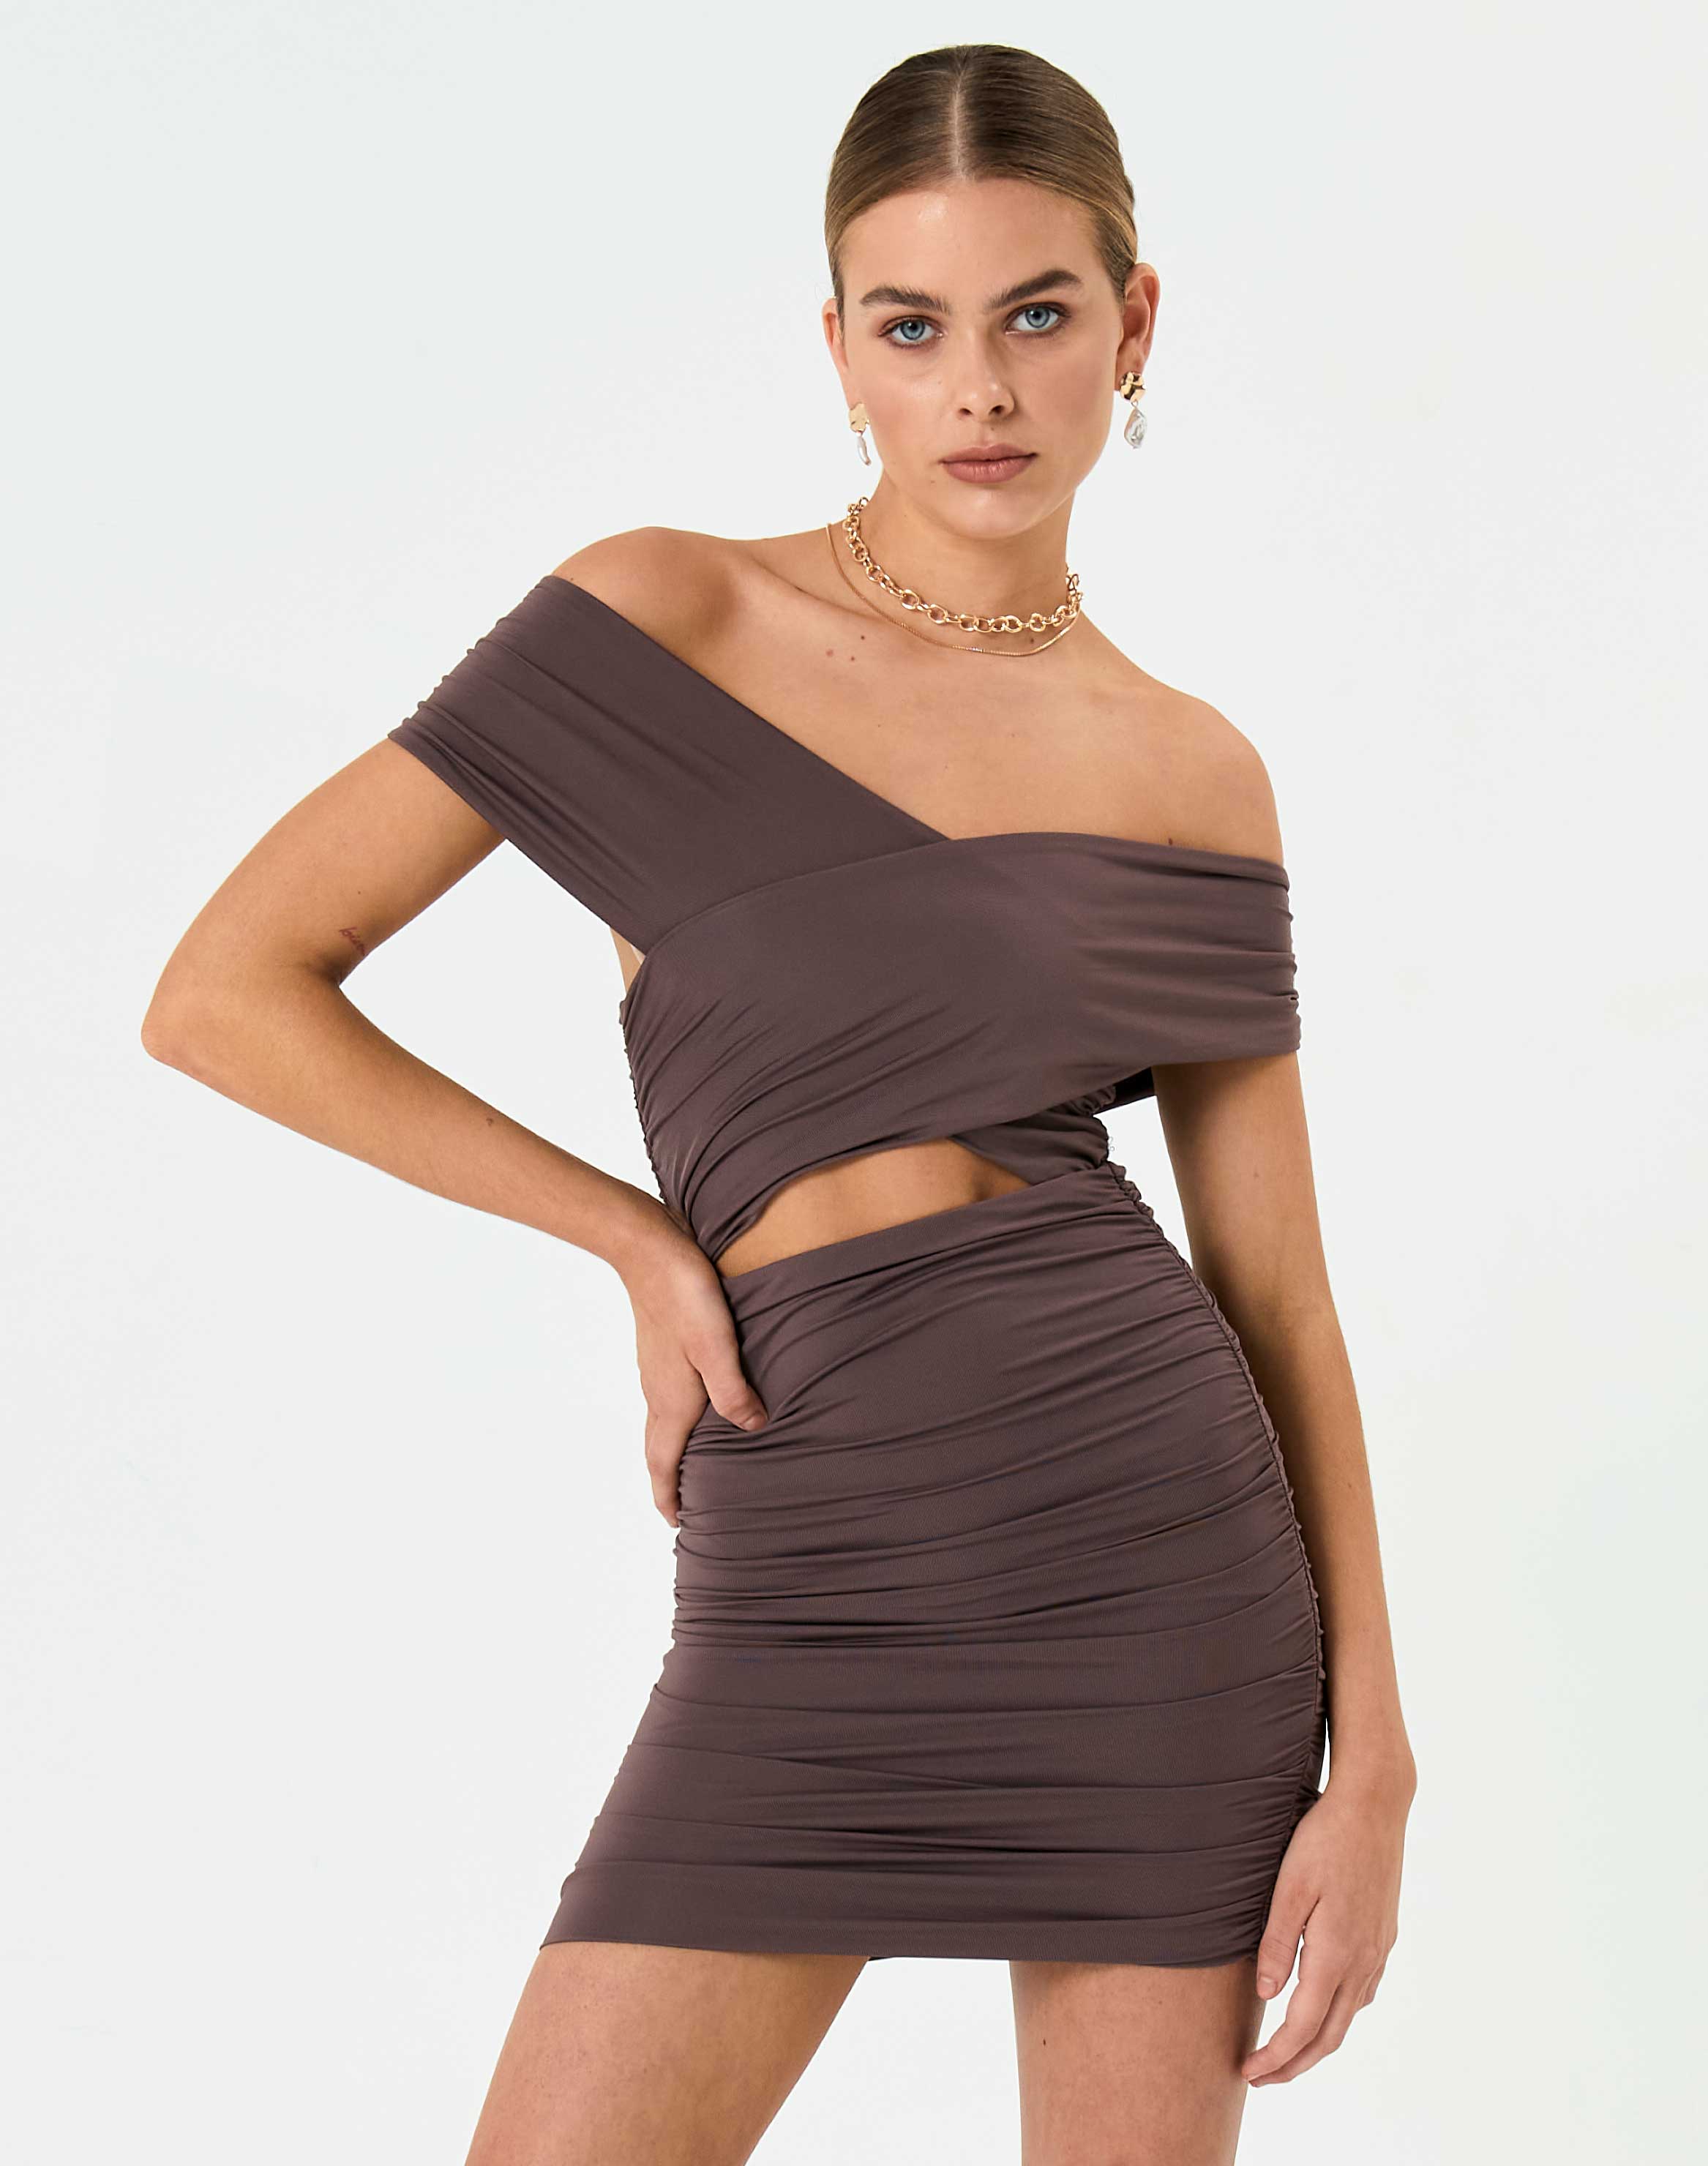 Wrap Dresses | Buy Wrap Dresses Online ...